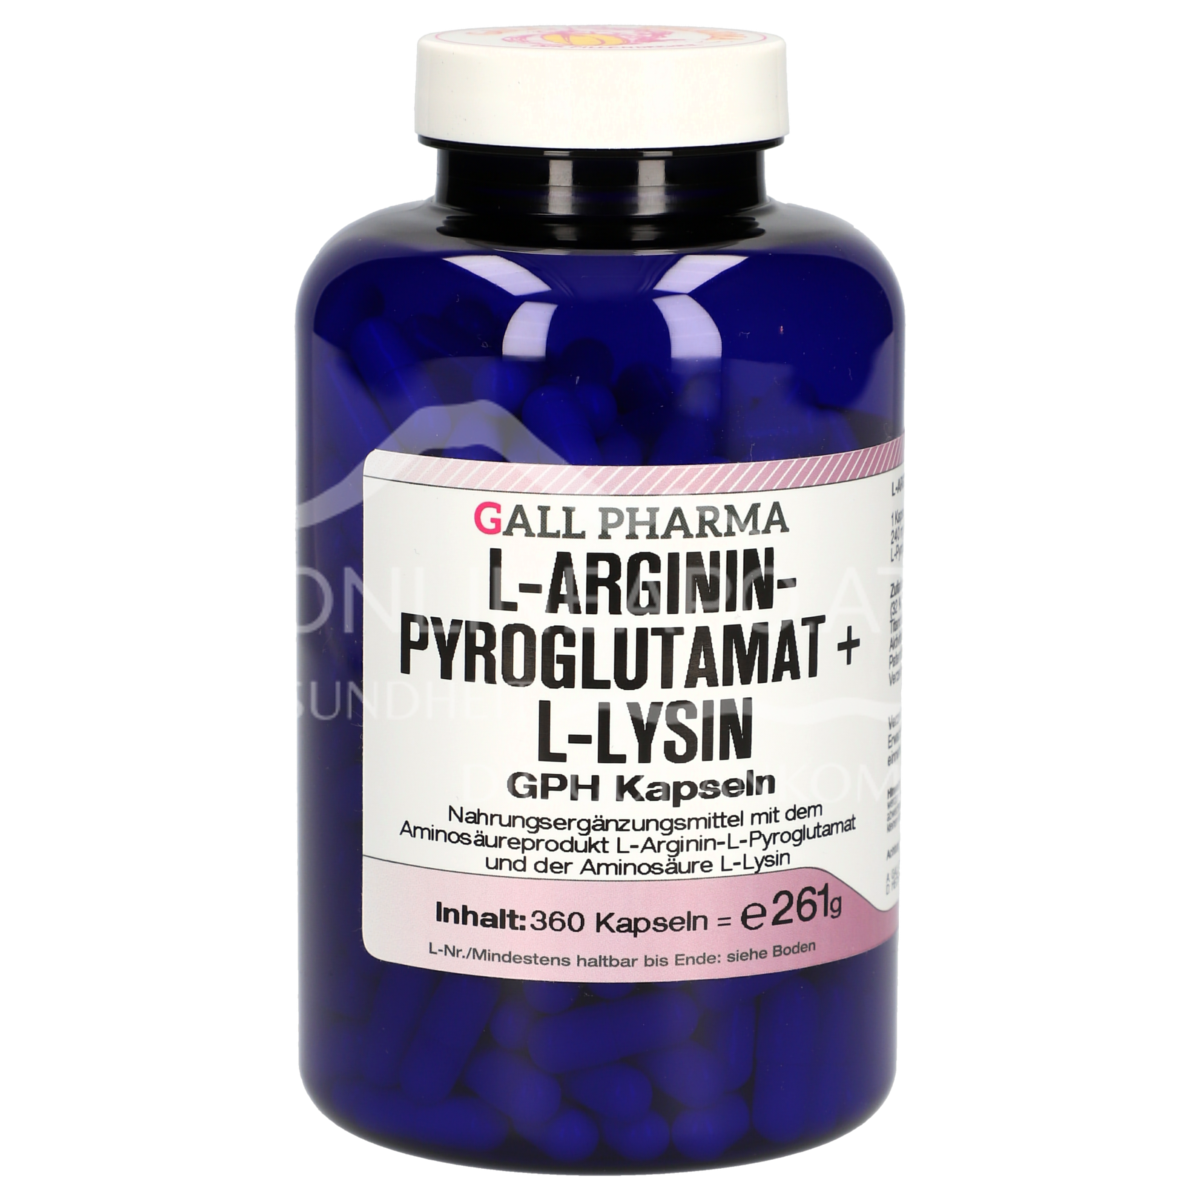 Gall Pharma L-Argininpyroglutamat + L-Lysin Kapseln